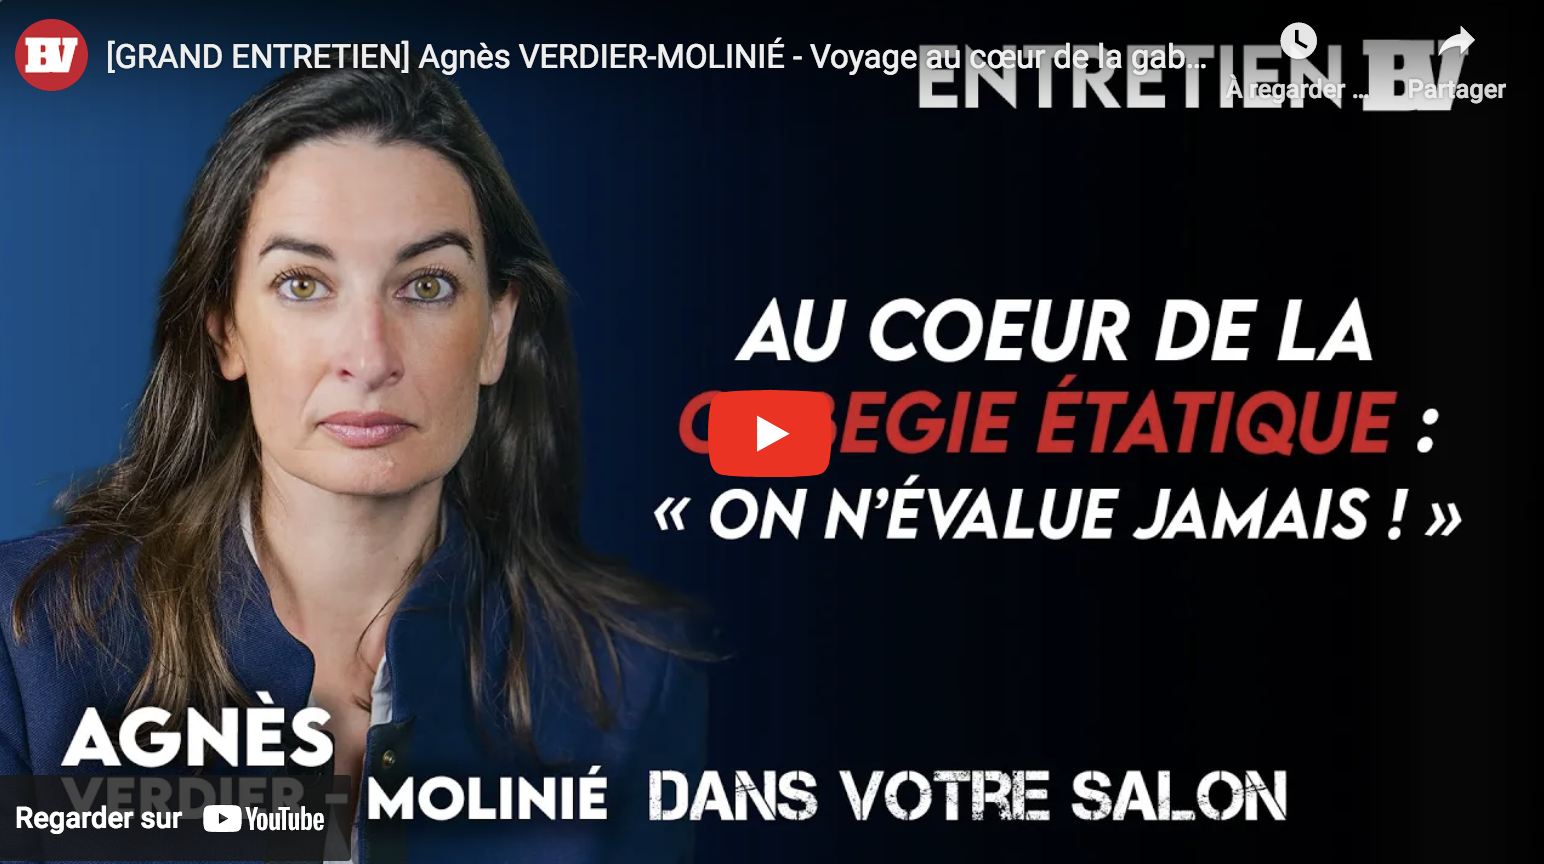 Agnès Verdier-Molinié : Voyage au cœur de la gabegie (ENTRETIEN)